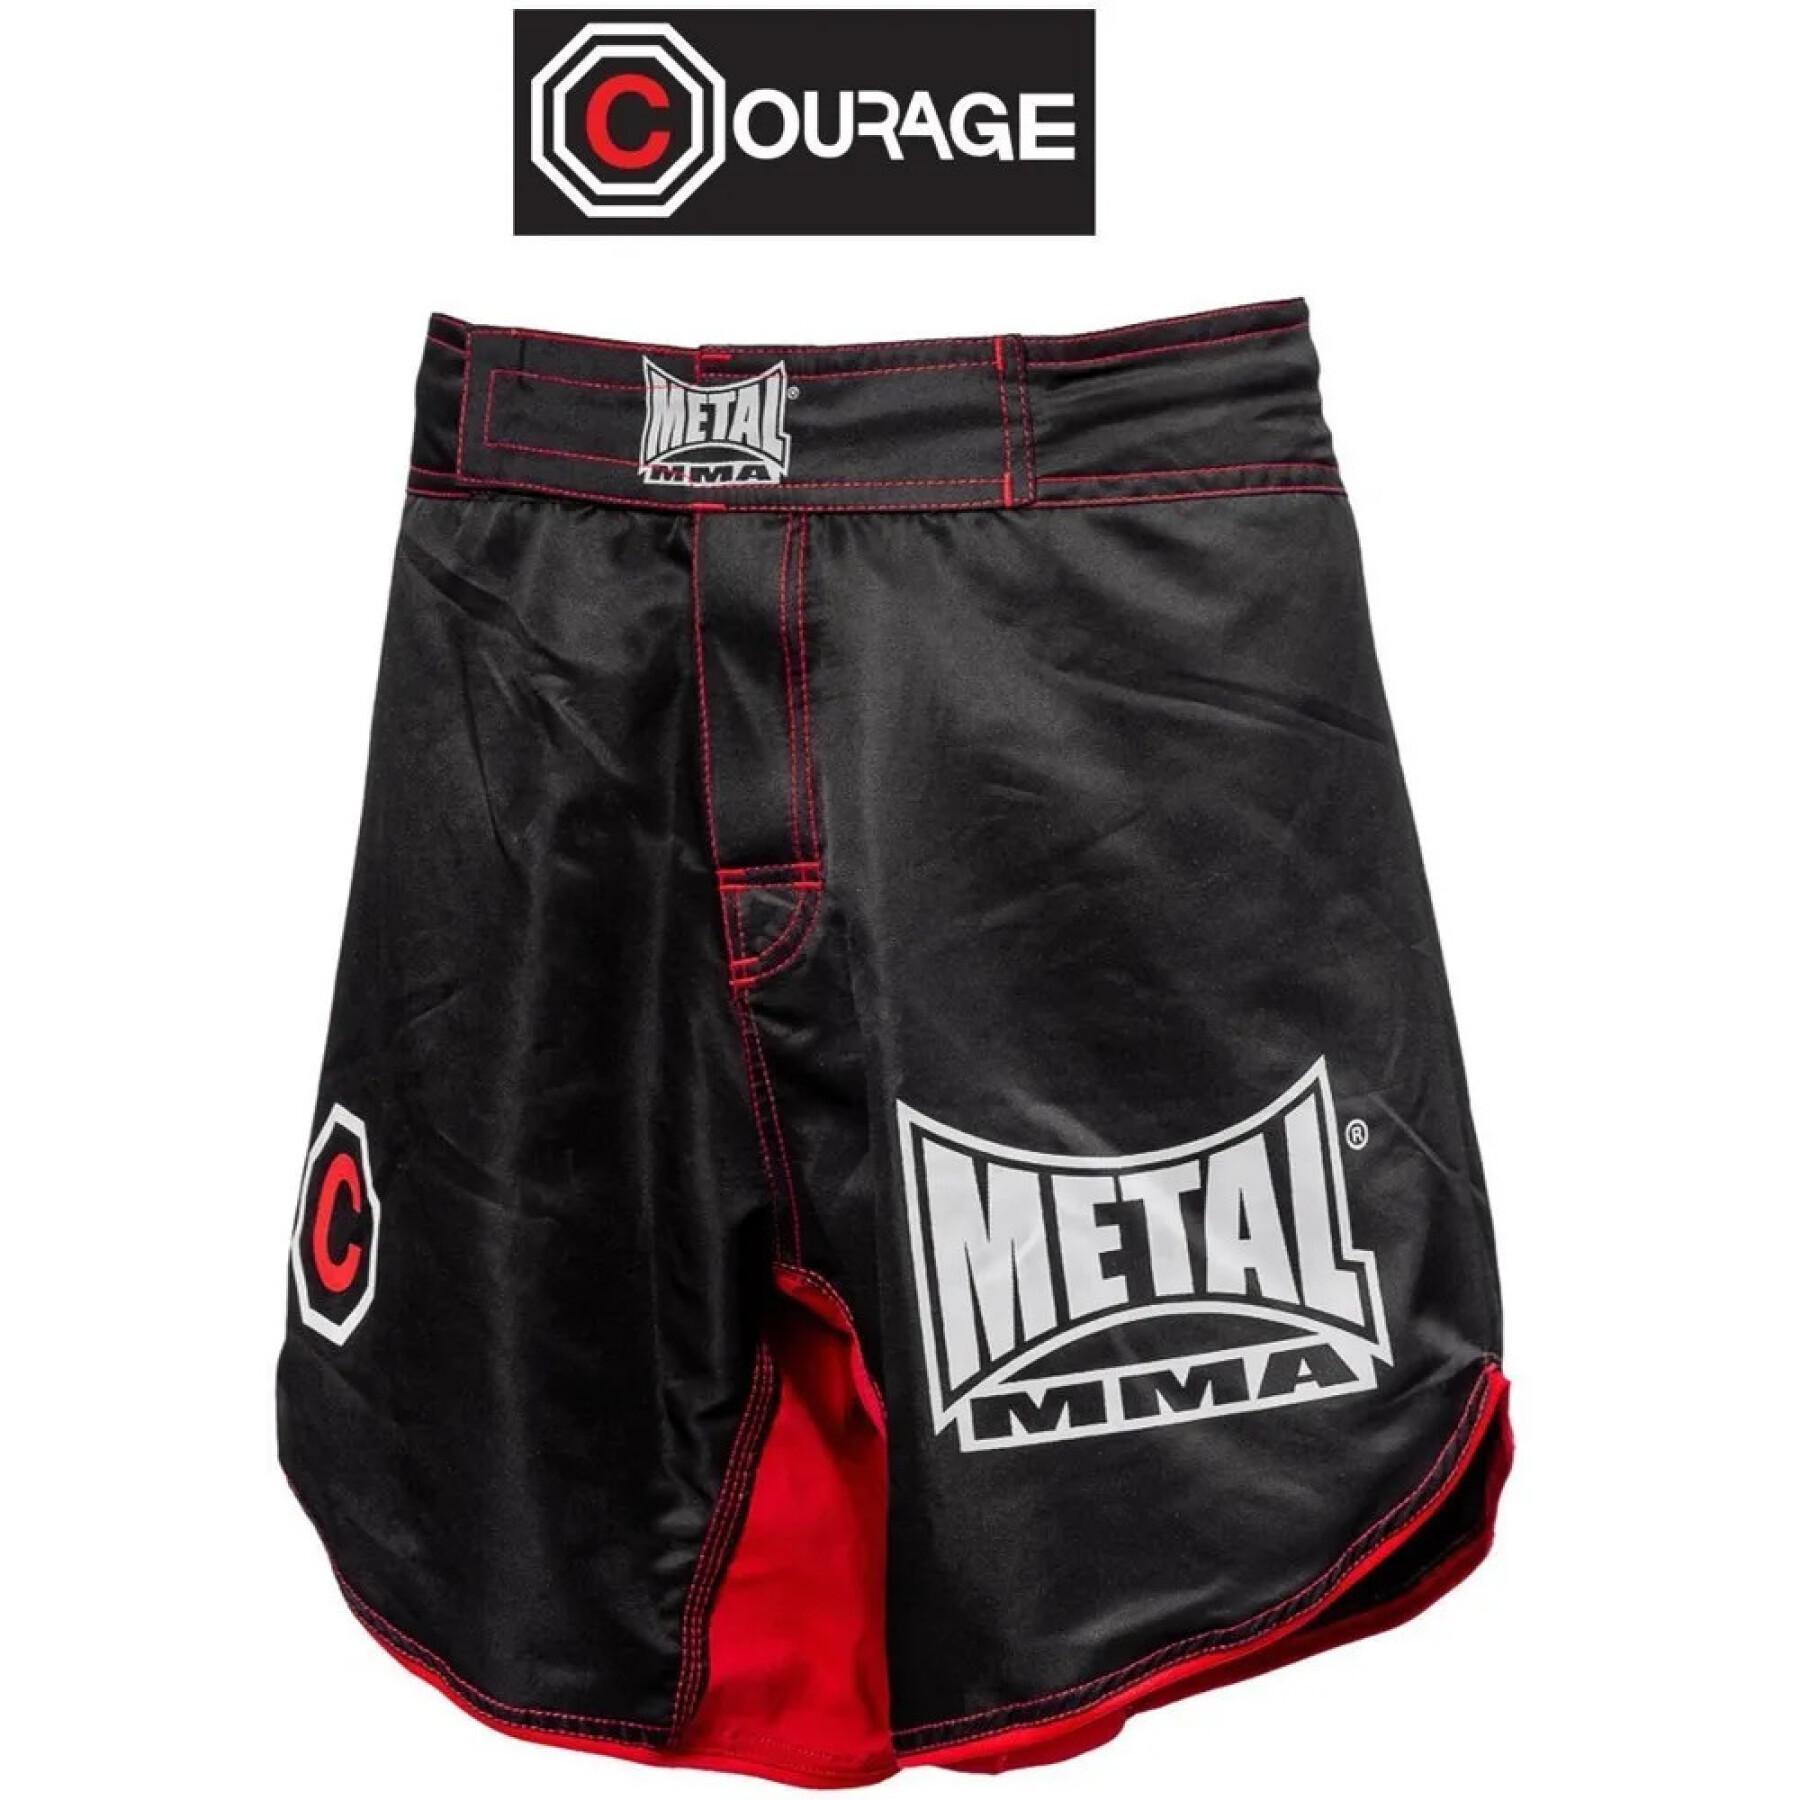 coragem de mma shorts Metal Boxe